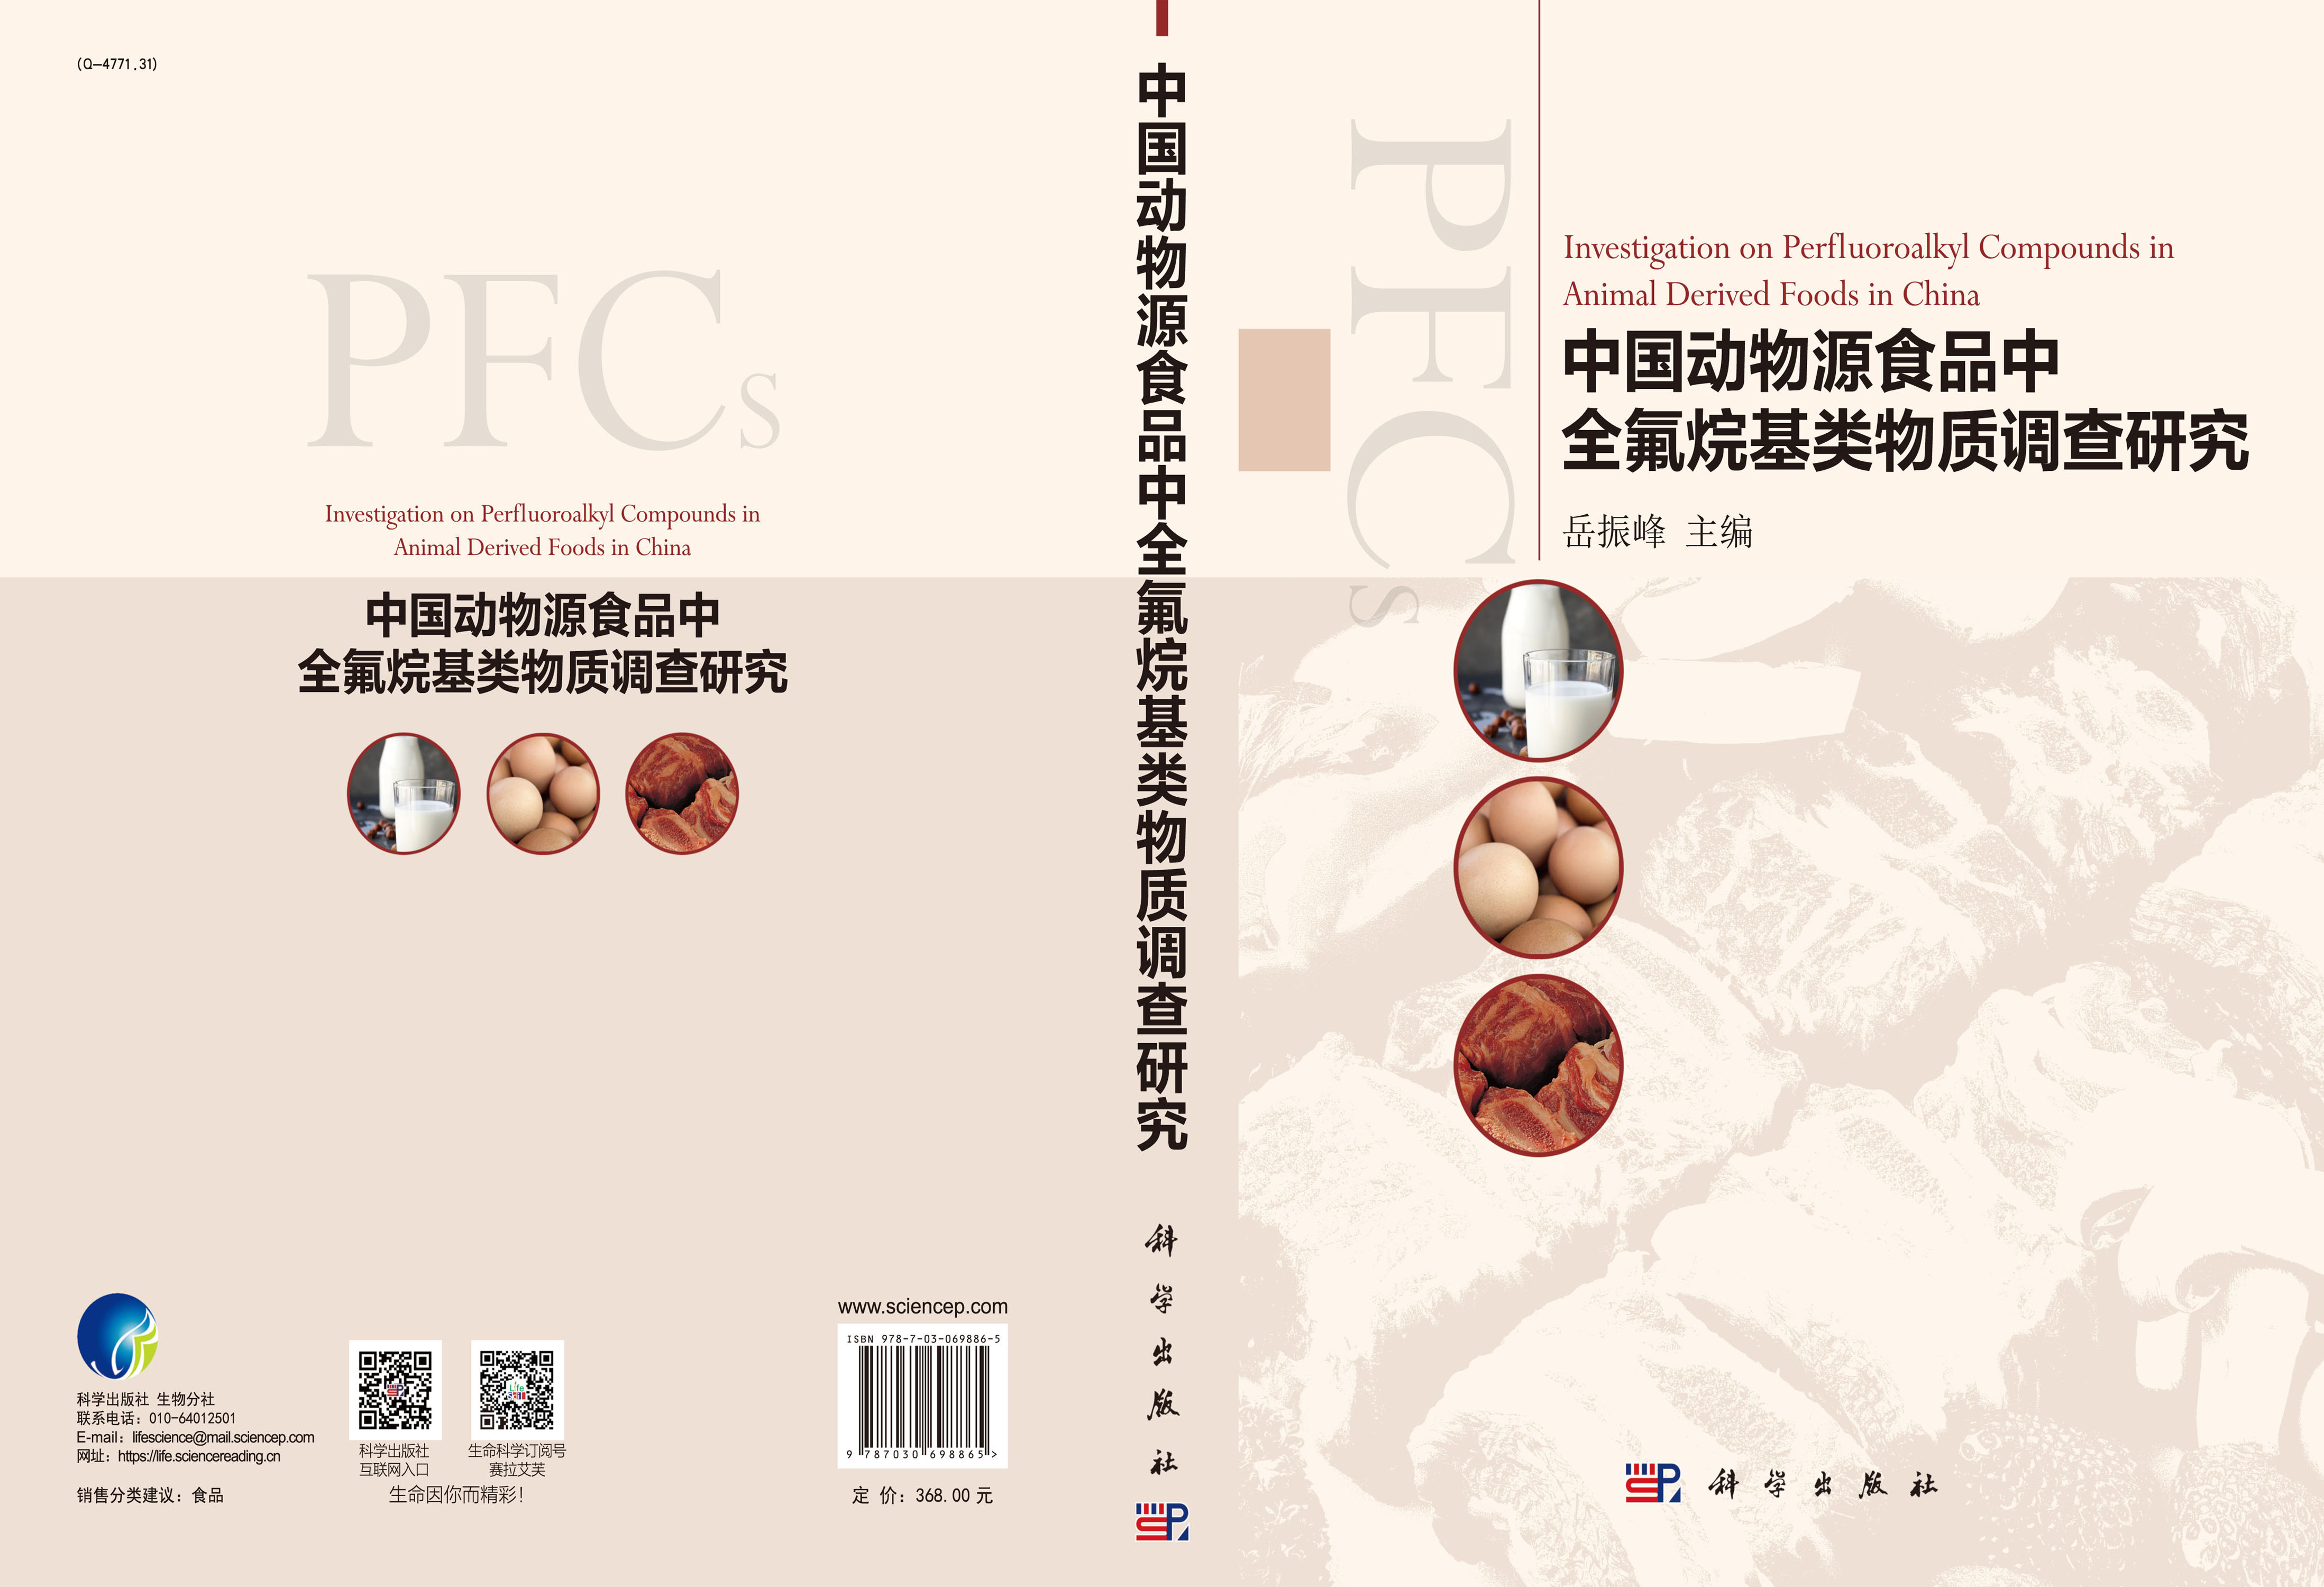 中国动物源食品中全氟烷基类物质调查研究